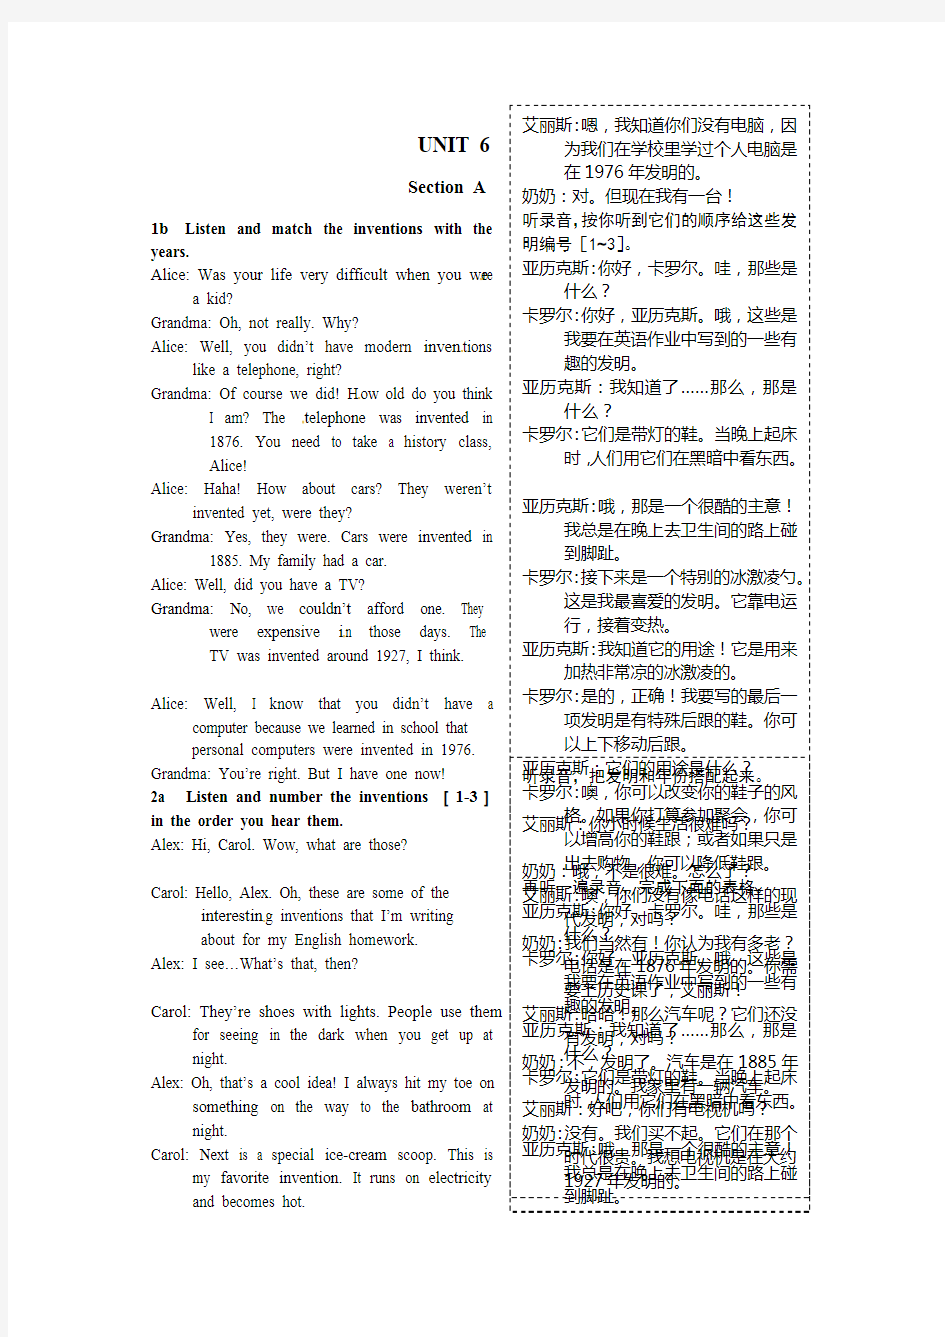 人教版九年级英语(上)UNIT 6 教材听力原文及汉语翻译